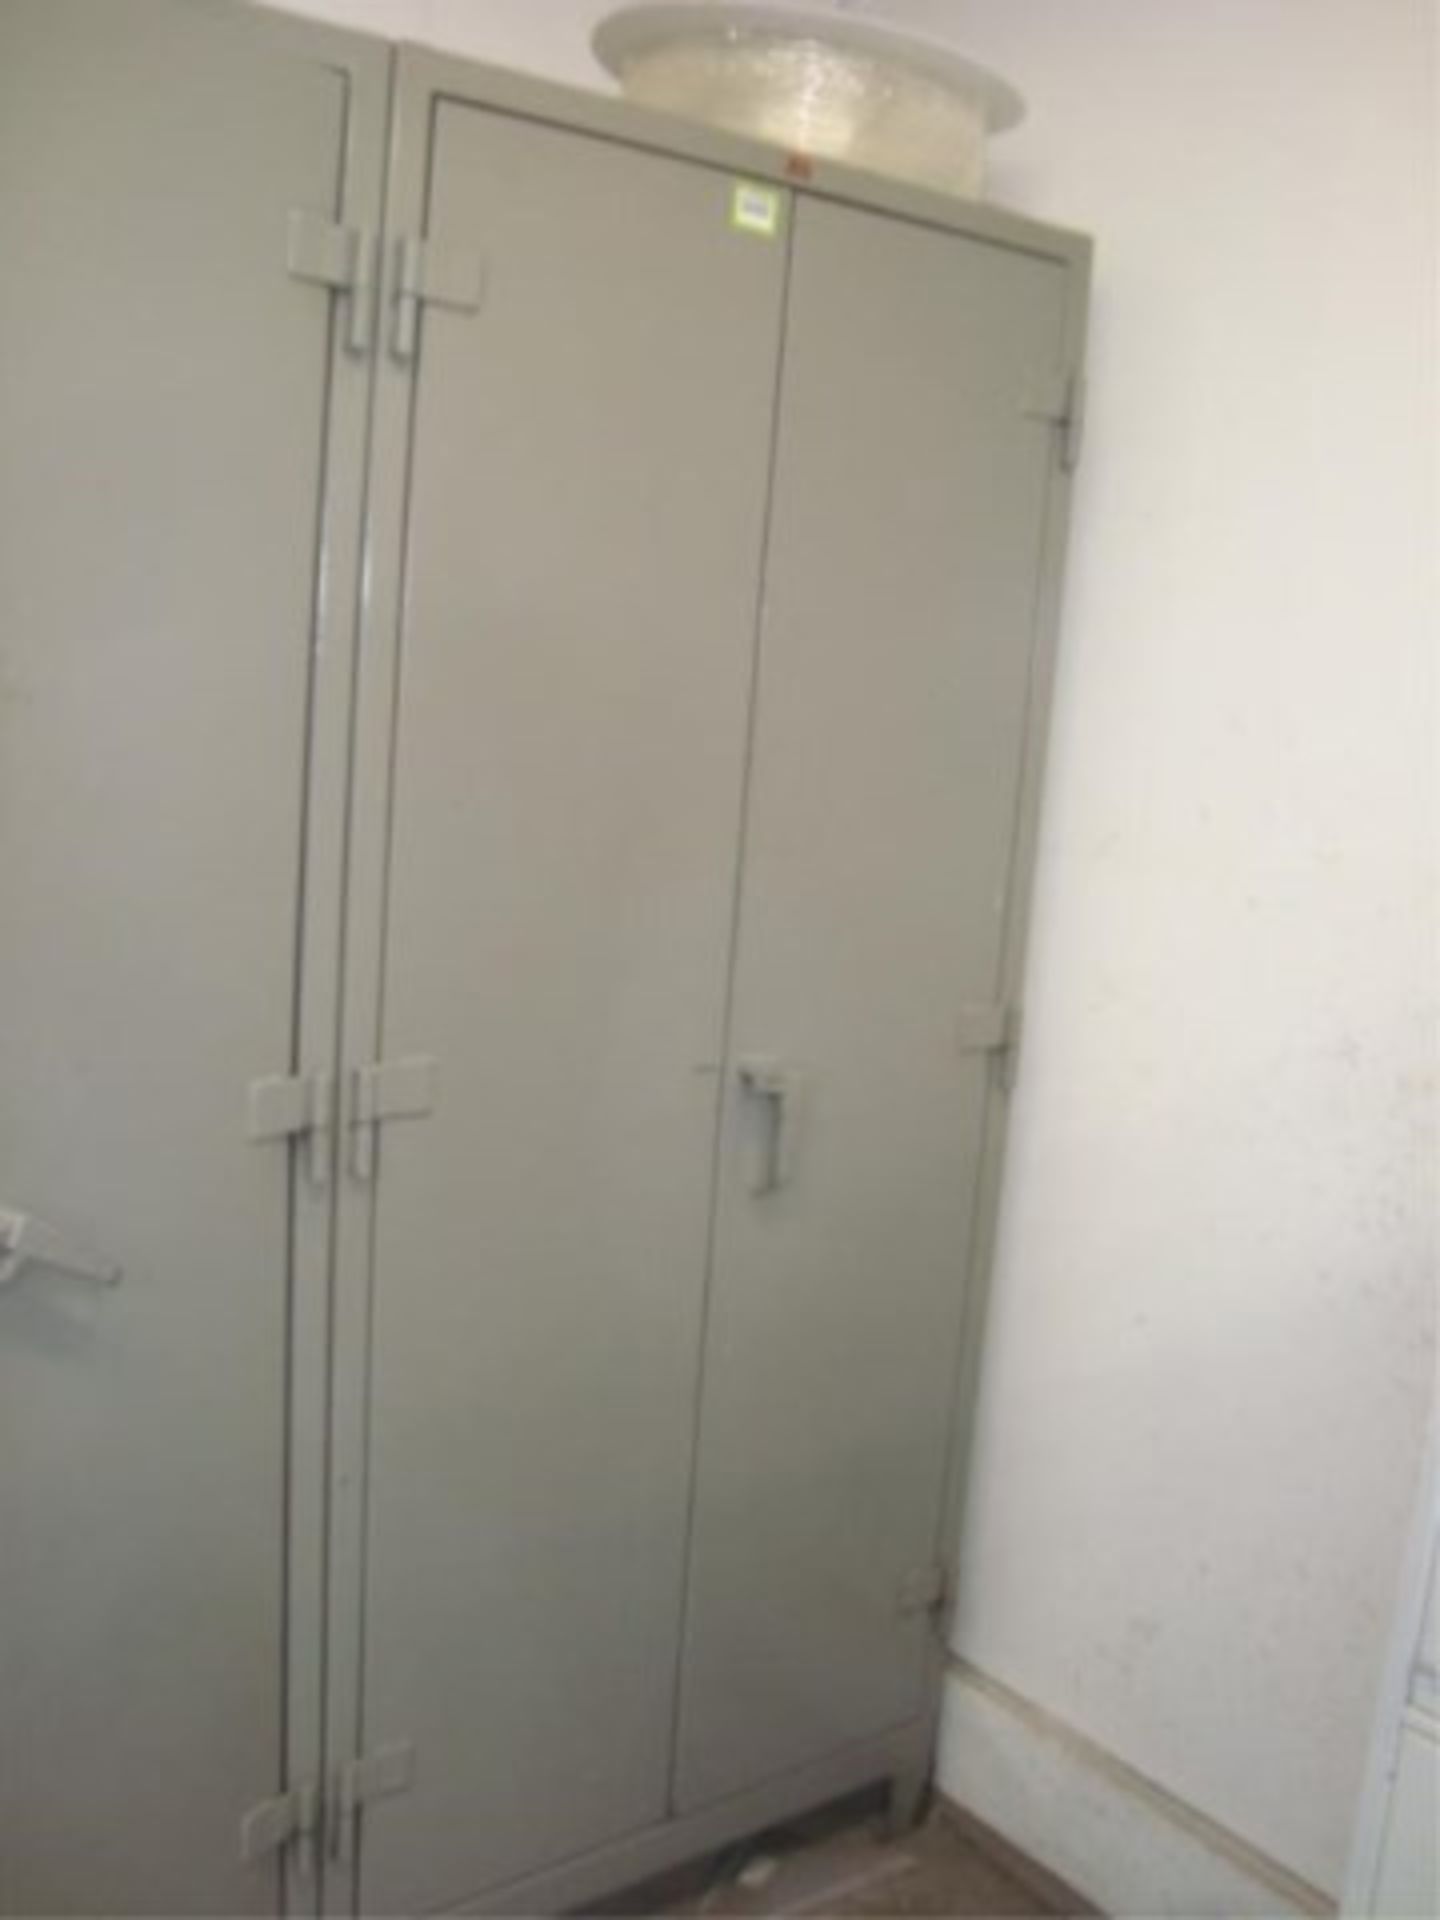 Heavy Duty 2-Door Storage Cabinet - Image 4 of 4